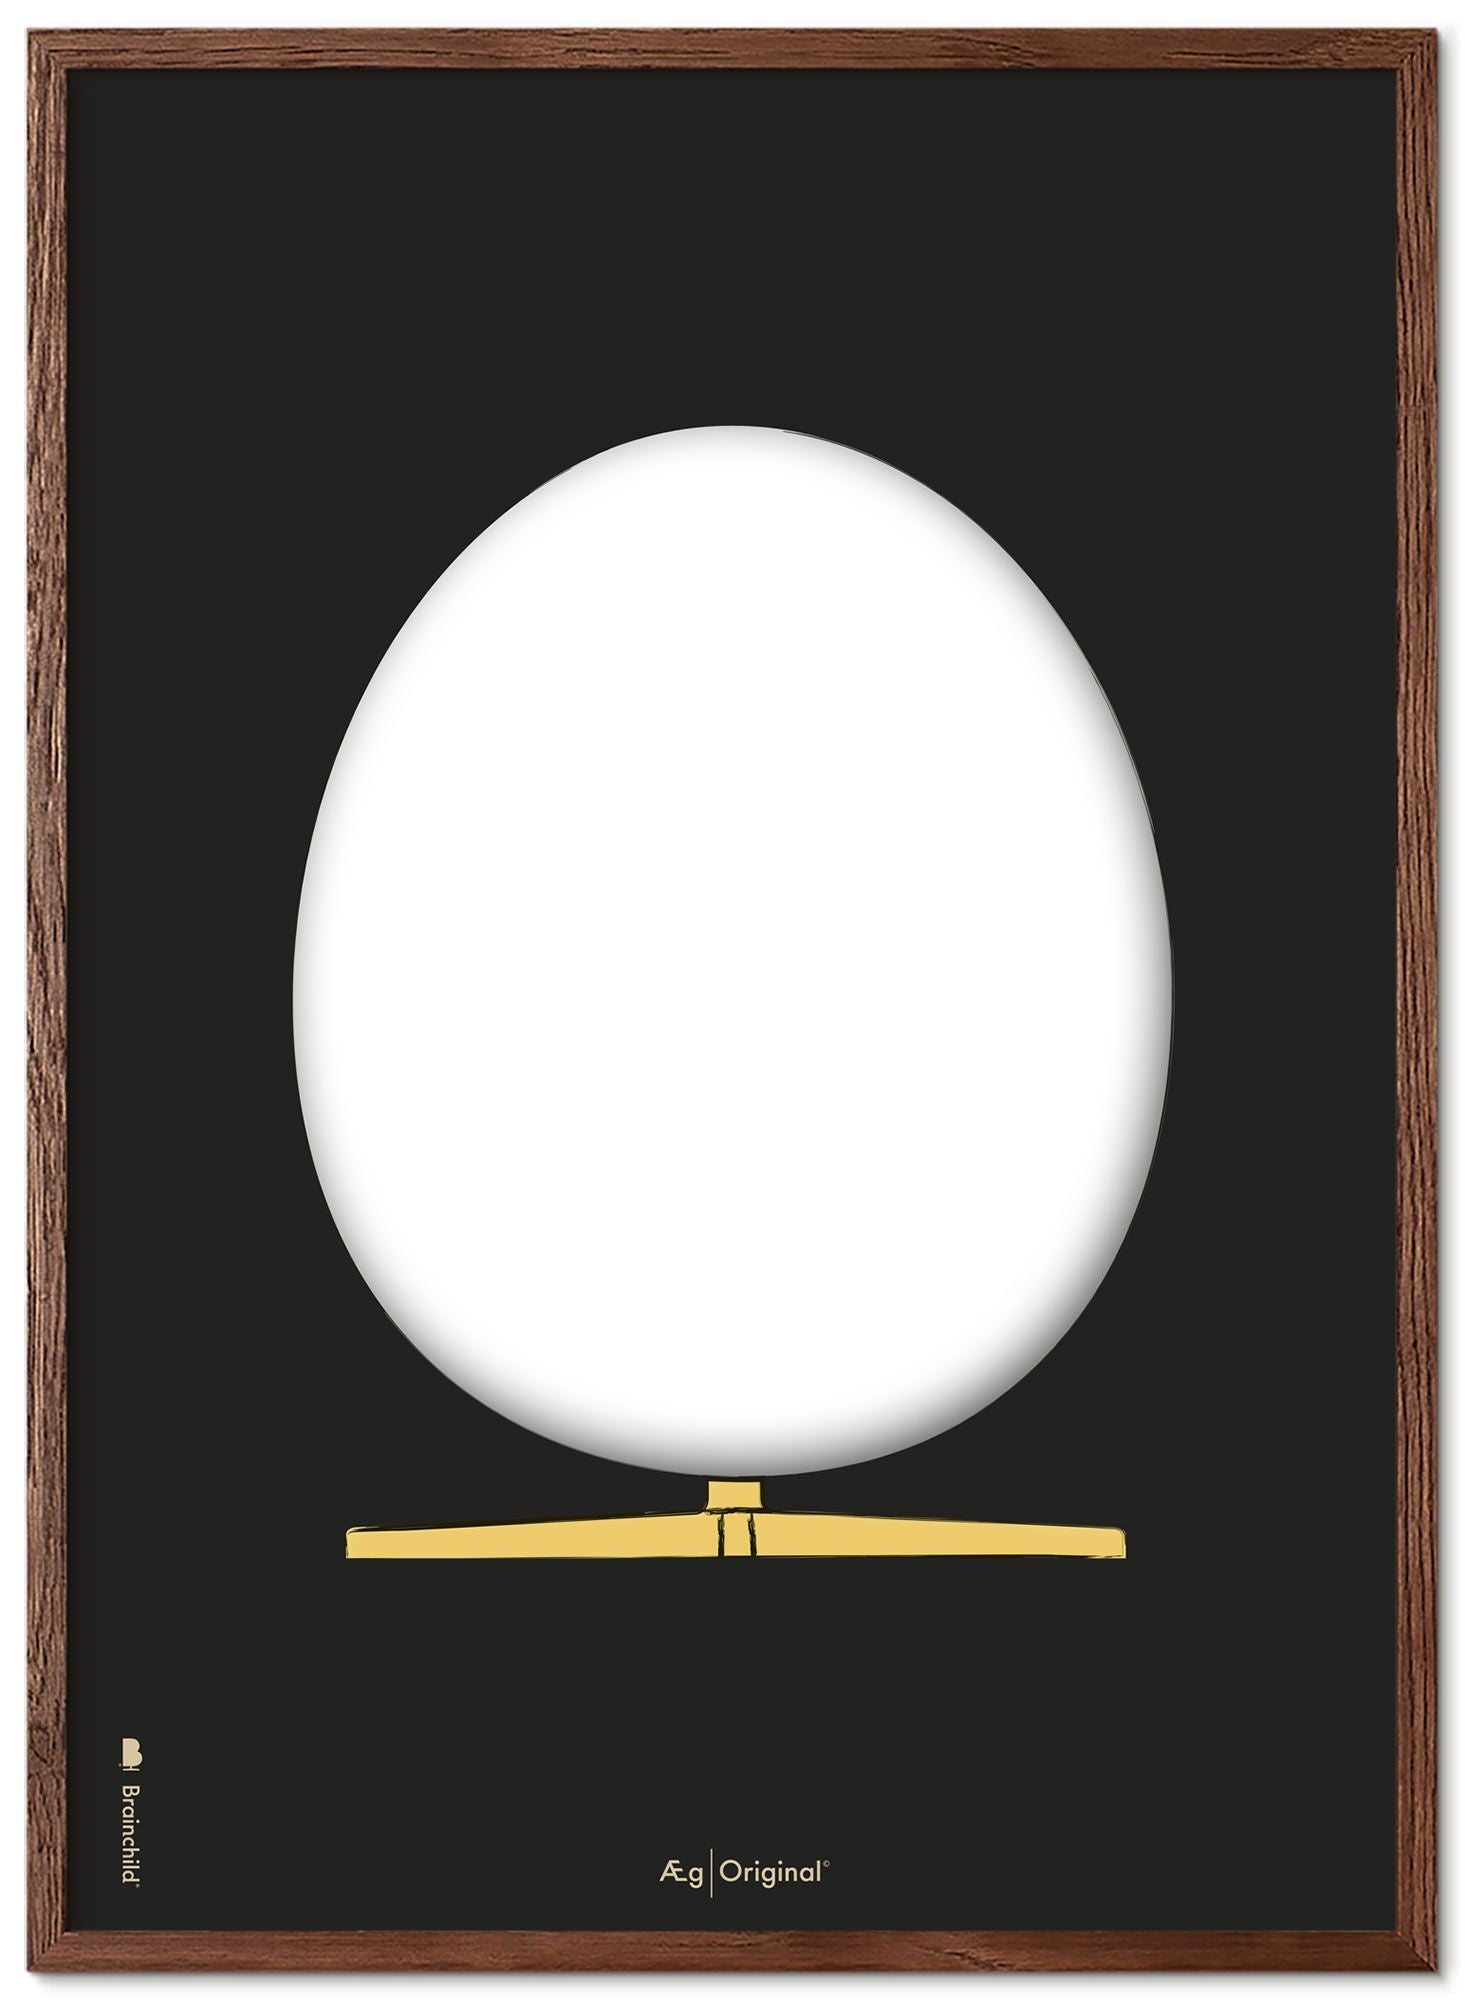 Brainchild das Eierdesign -Skizze Posterrahmen aus dunklem Holz A5, schwarzer Hintergrund